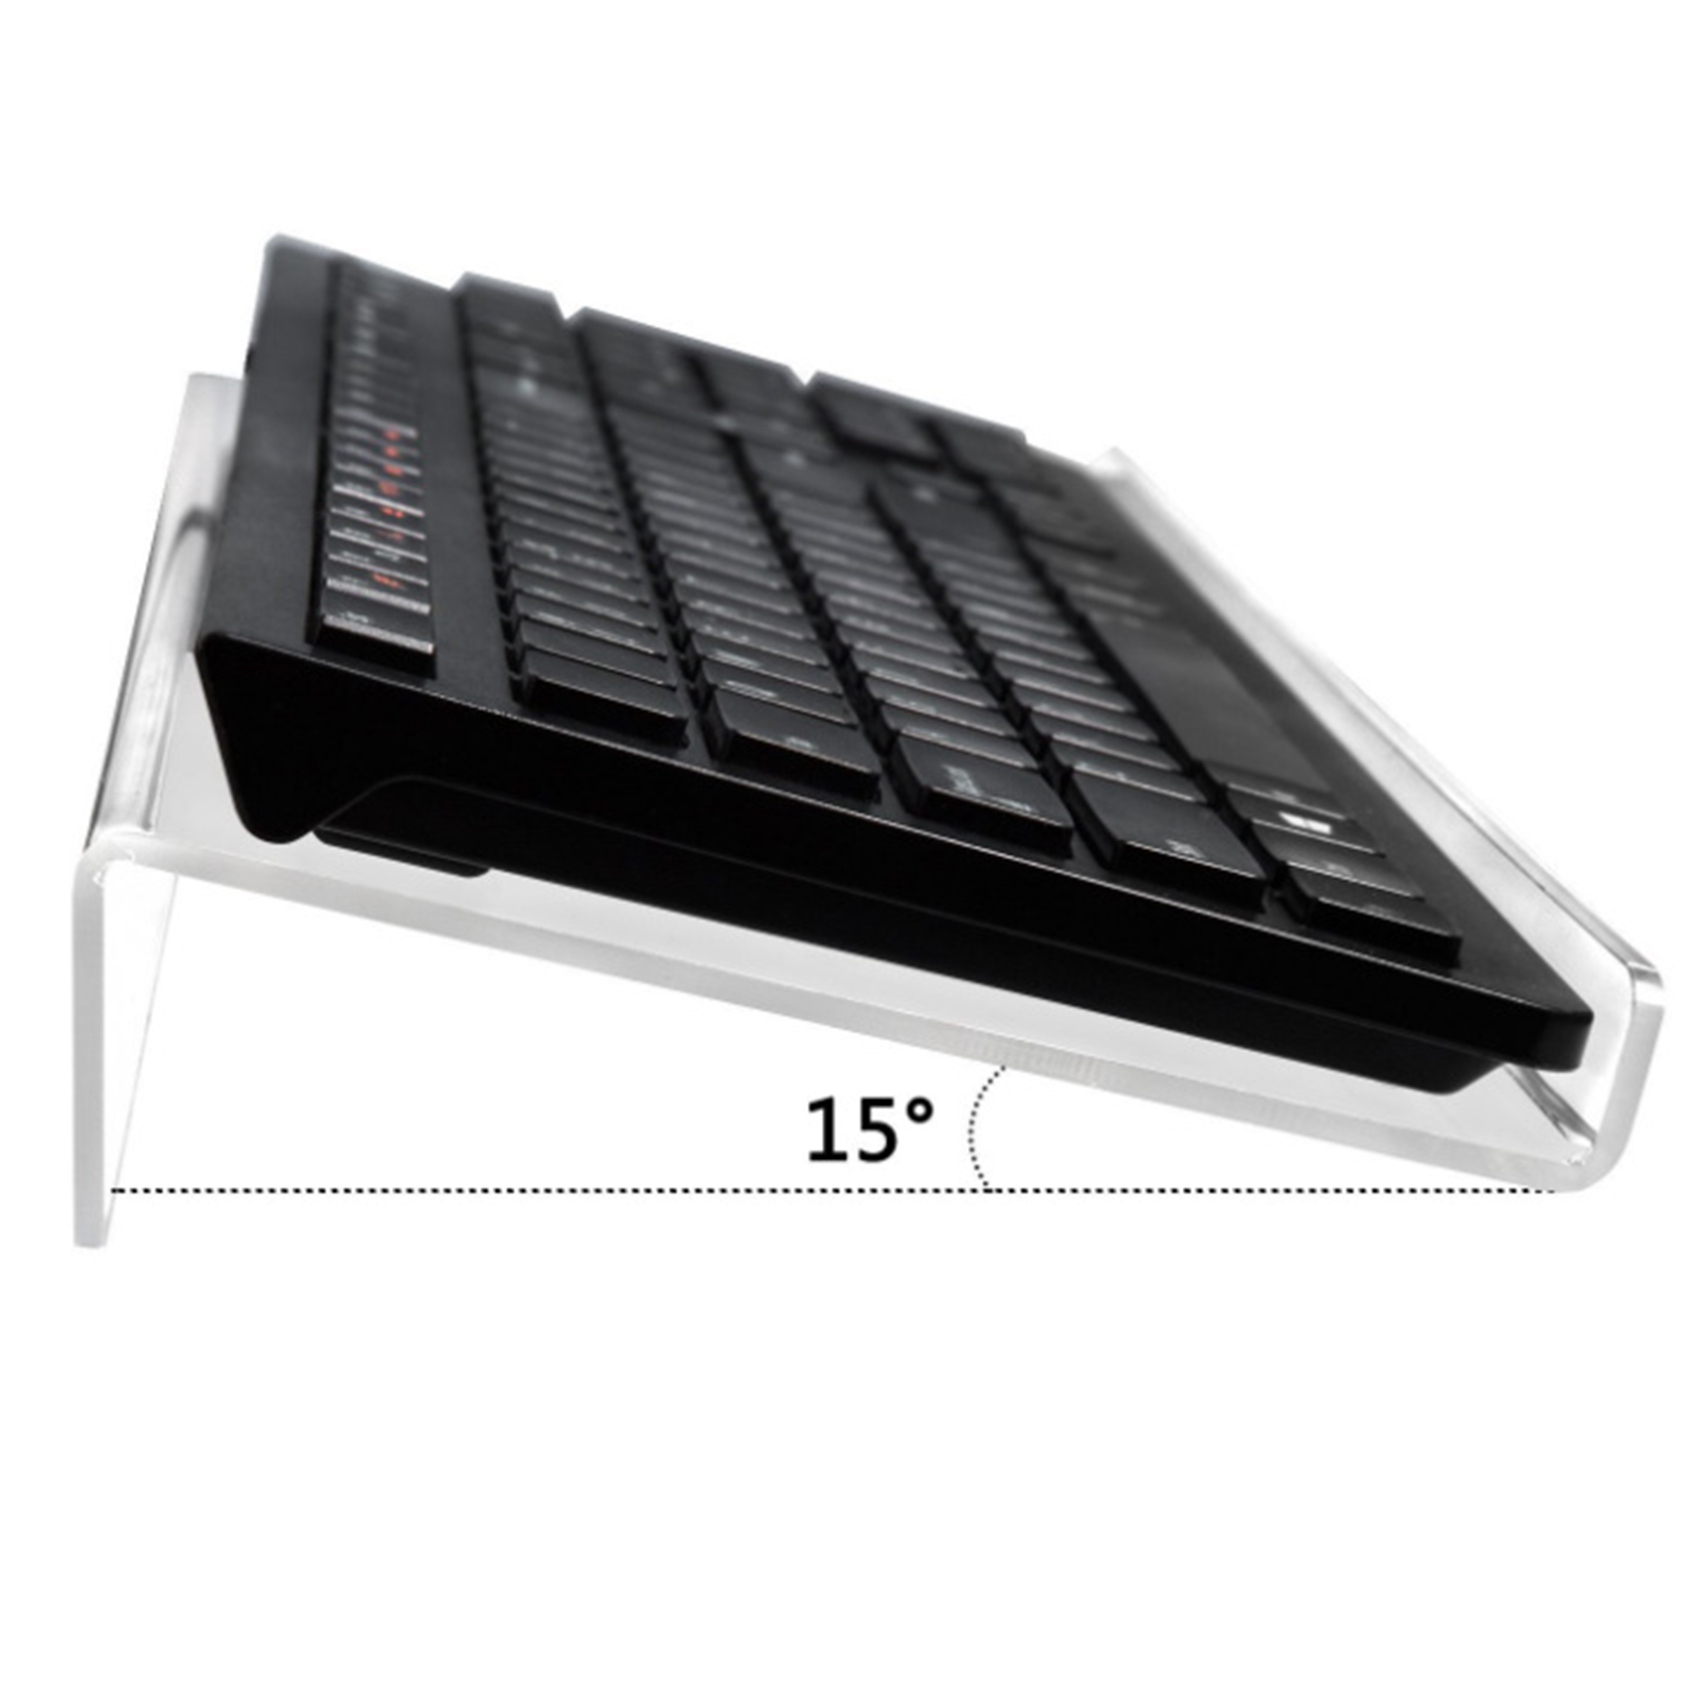 размер полки для клавиатуры